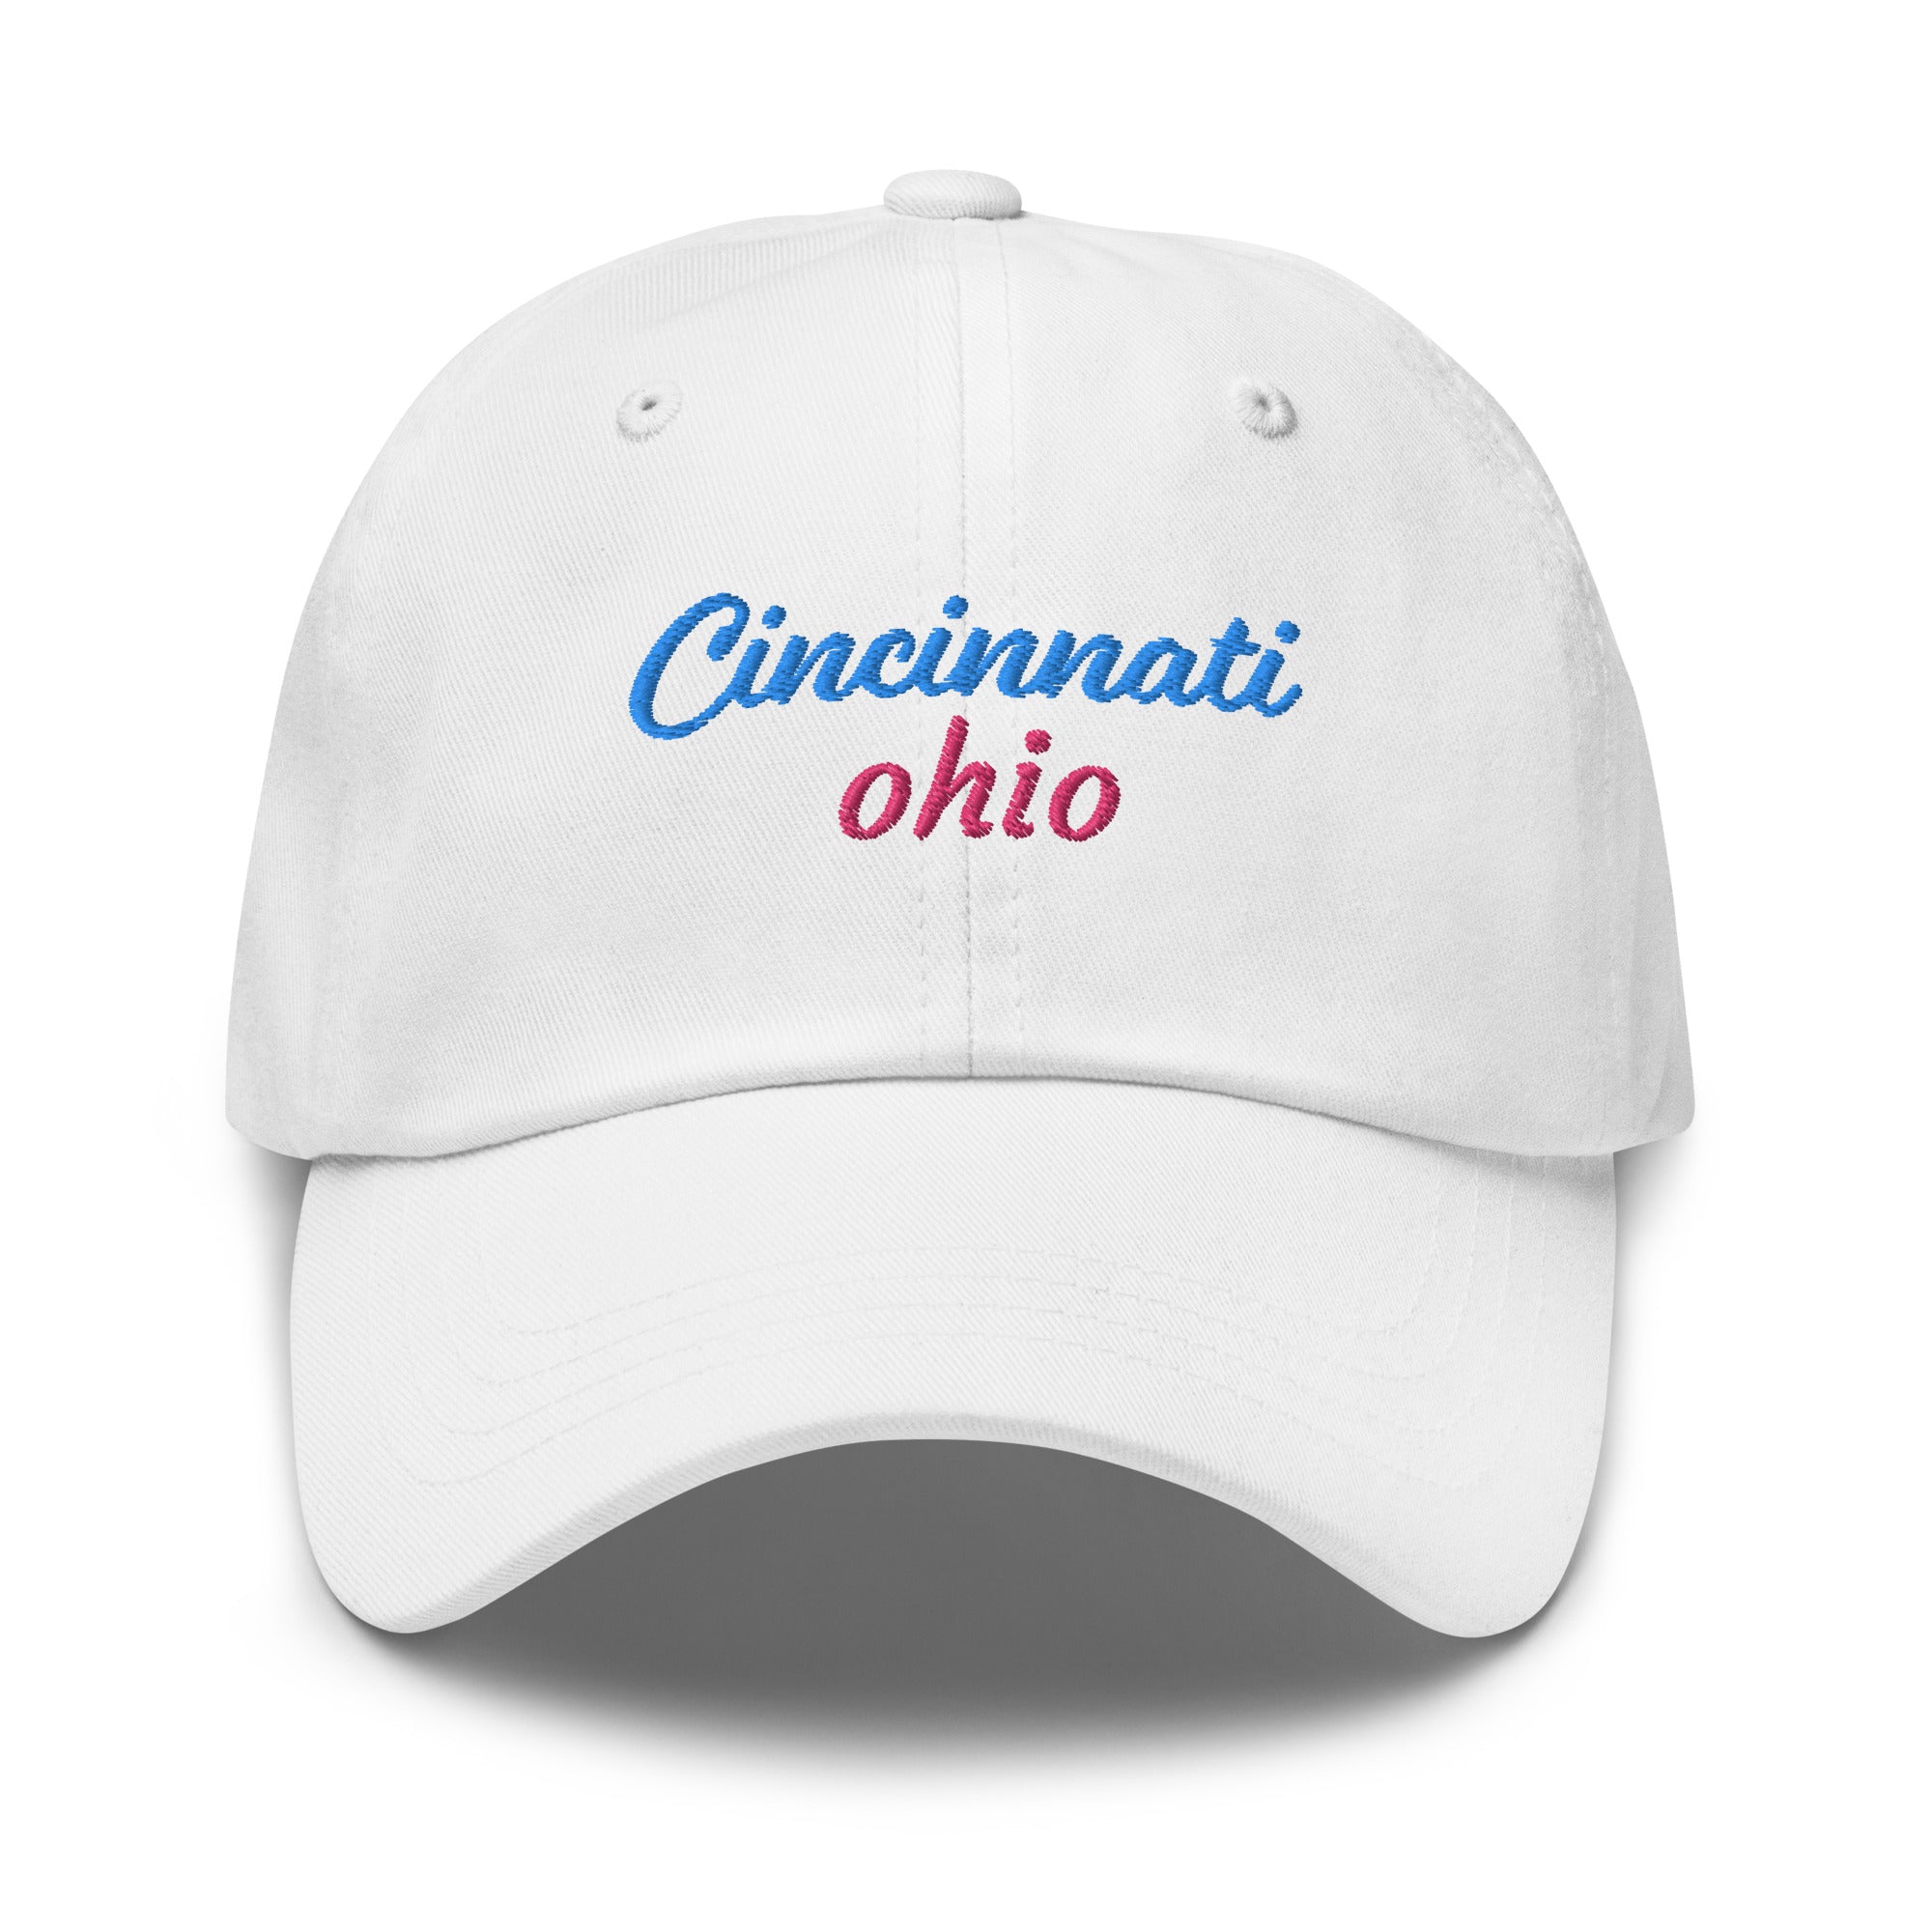 Cincinnati Vice hat